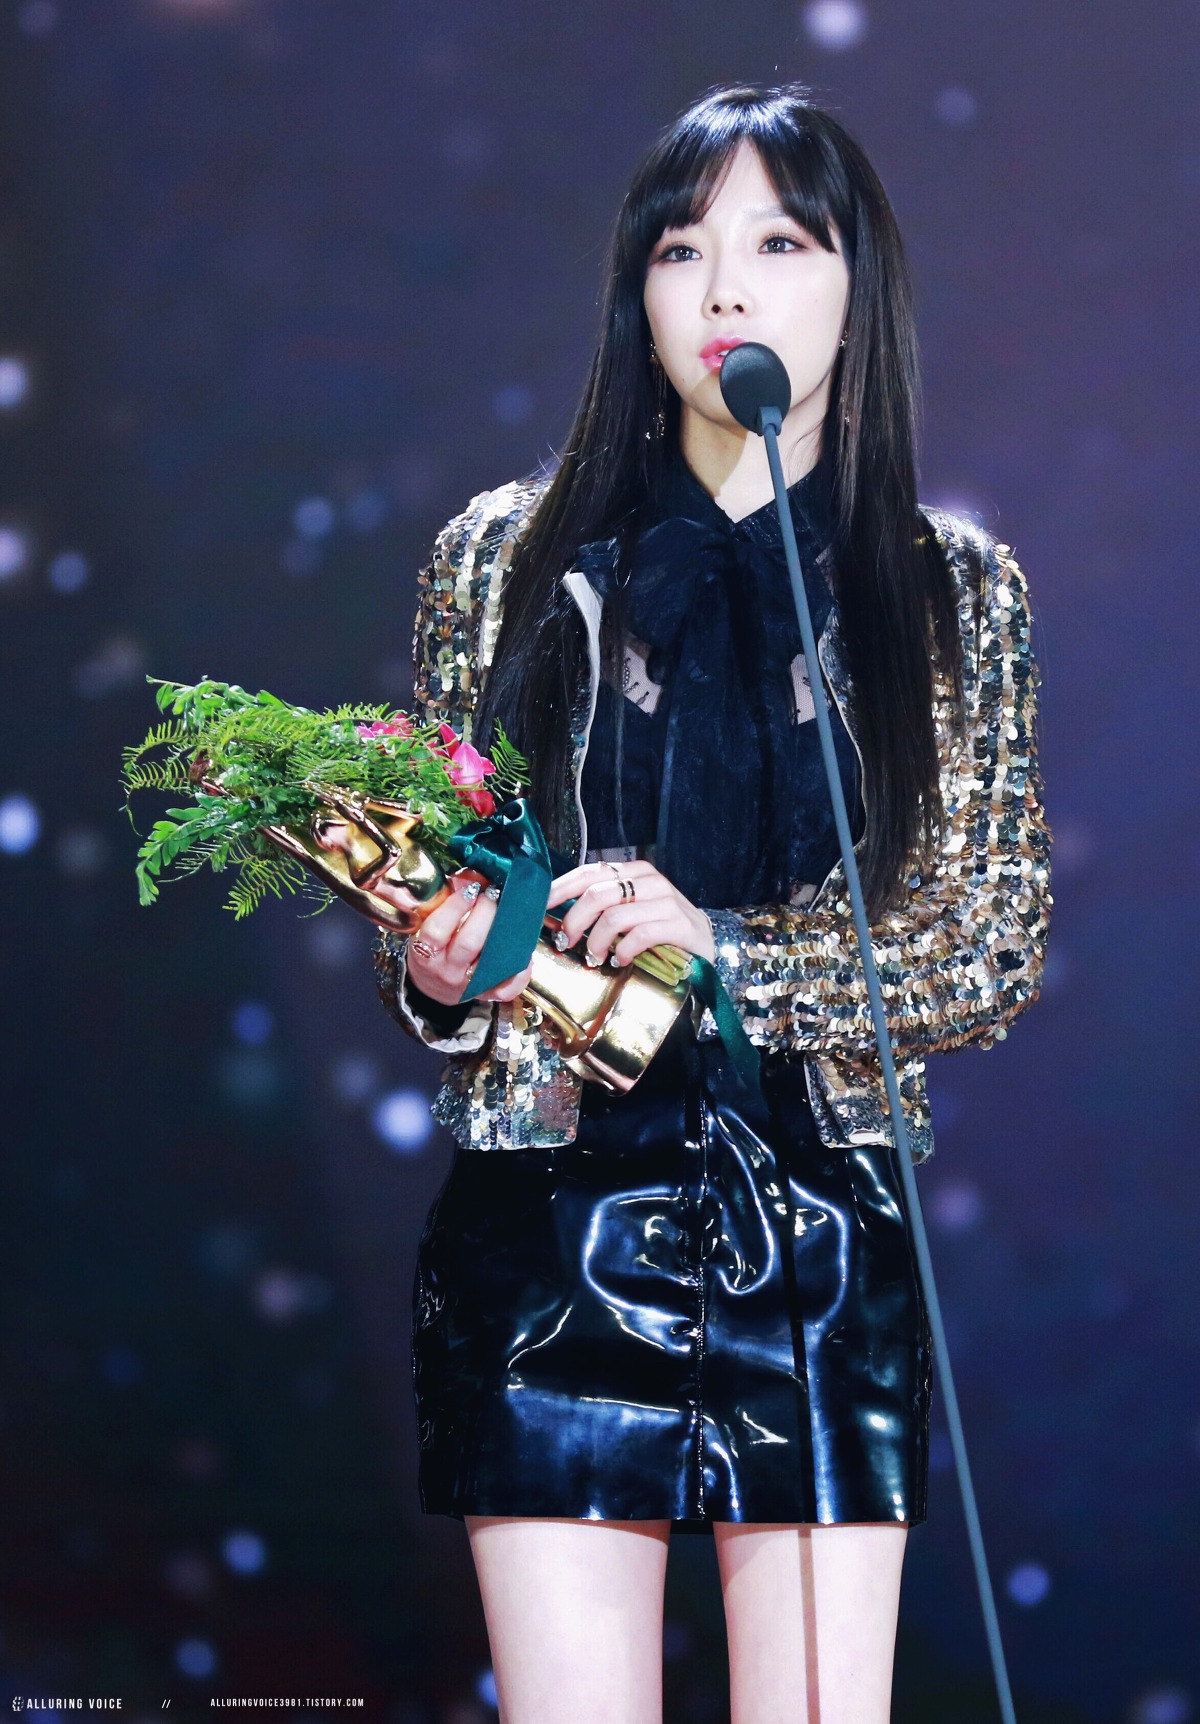 [PIC][13-01-2017]Hình ảnh mới nhất từ "31st Golden Disk Awards" của TaeYeon và MC SeoHyun - Page 3 2640AC41587B3578334234